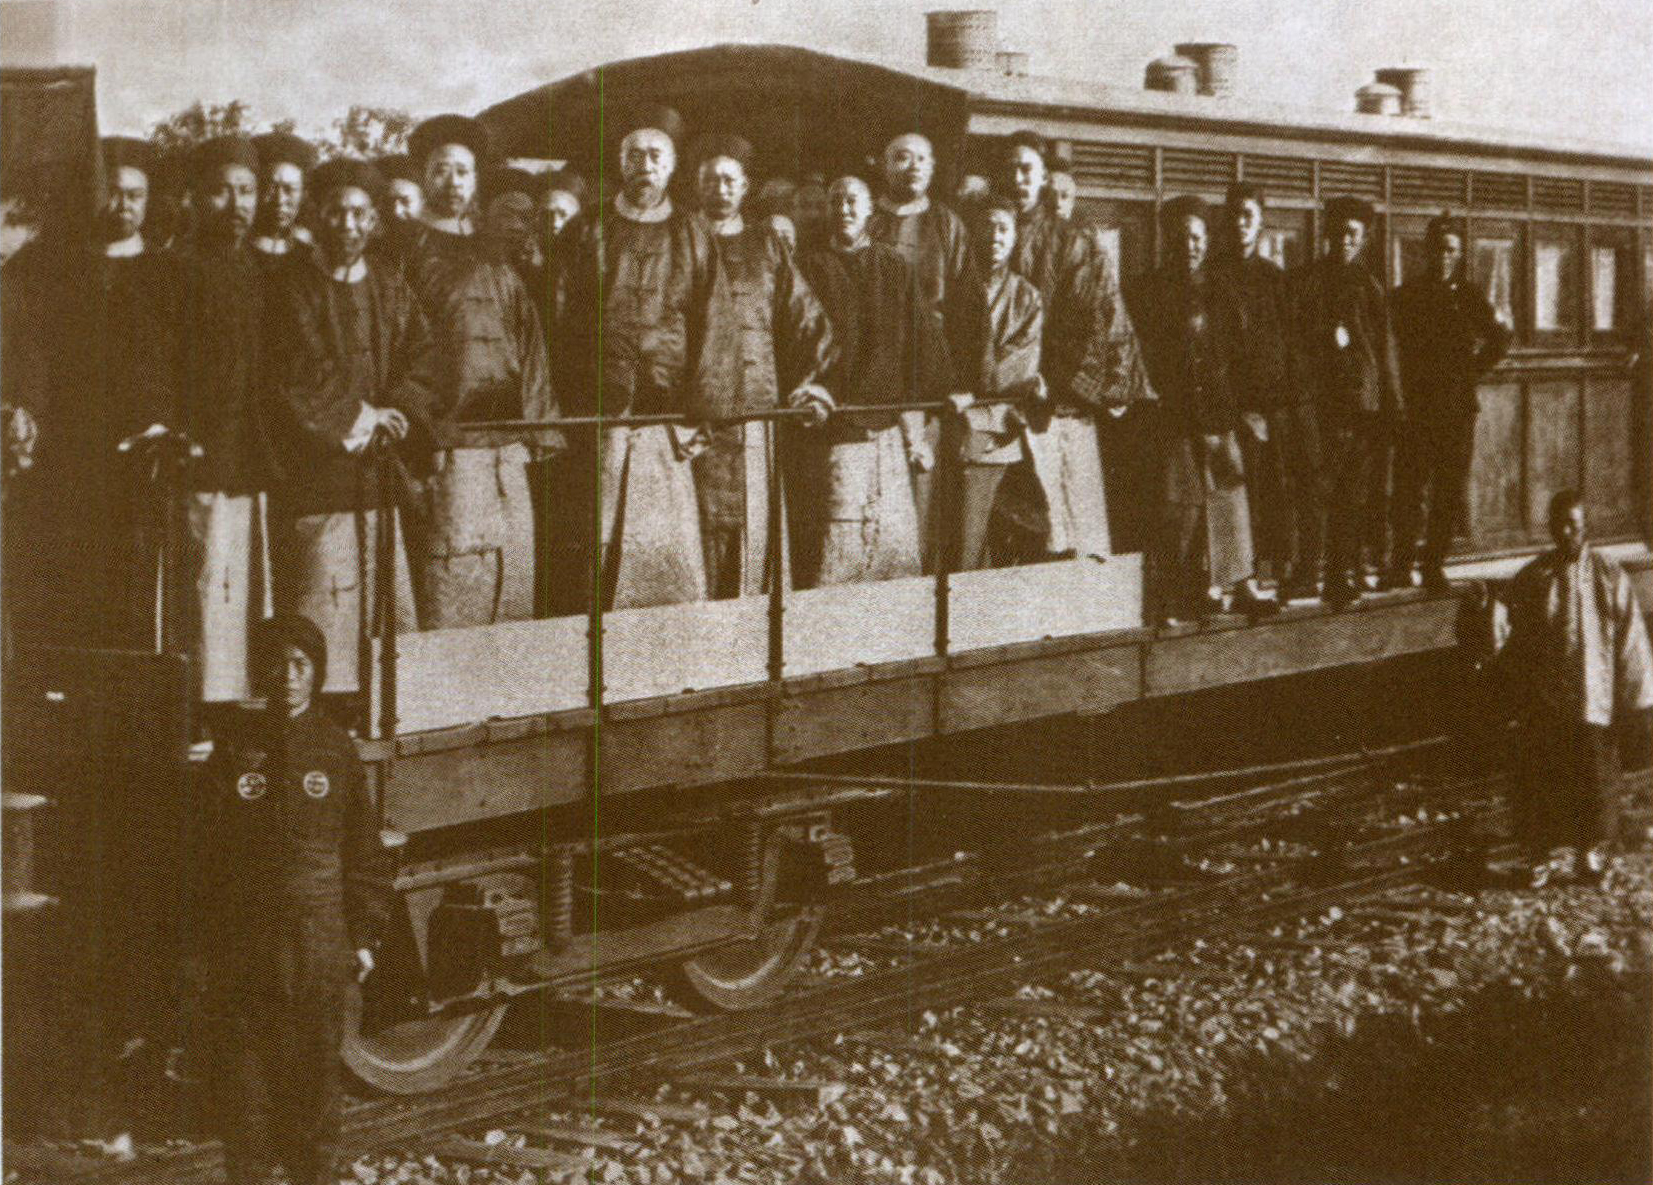 中国第一条运营铁路开通